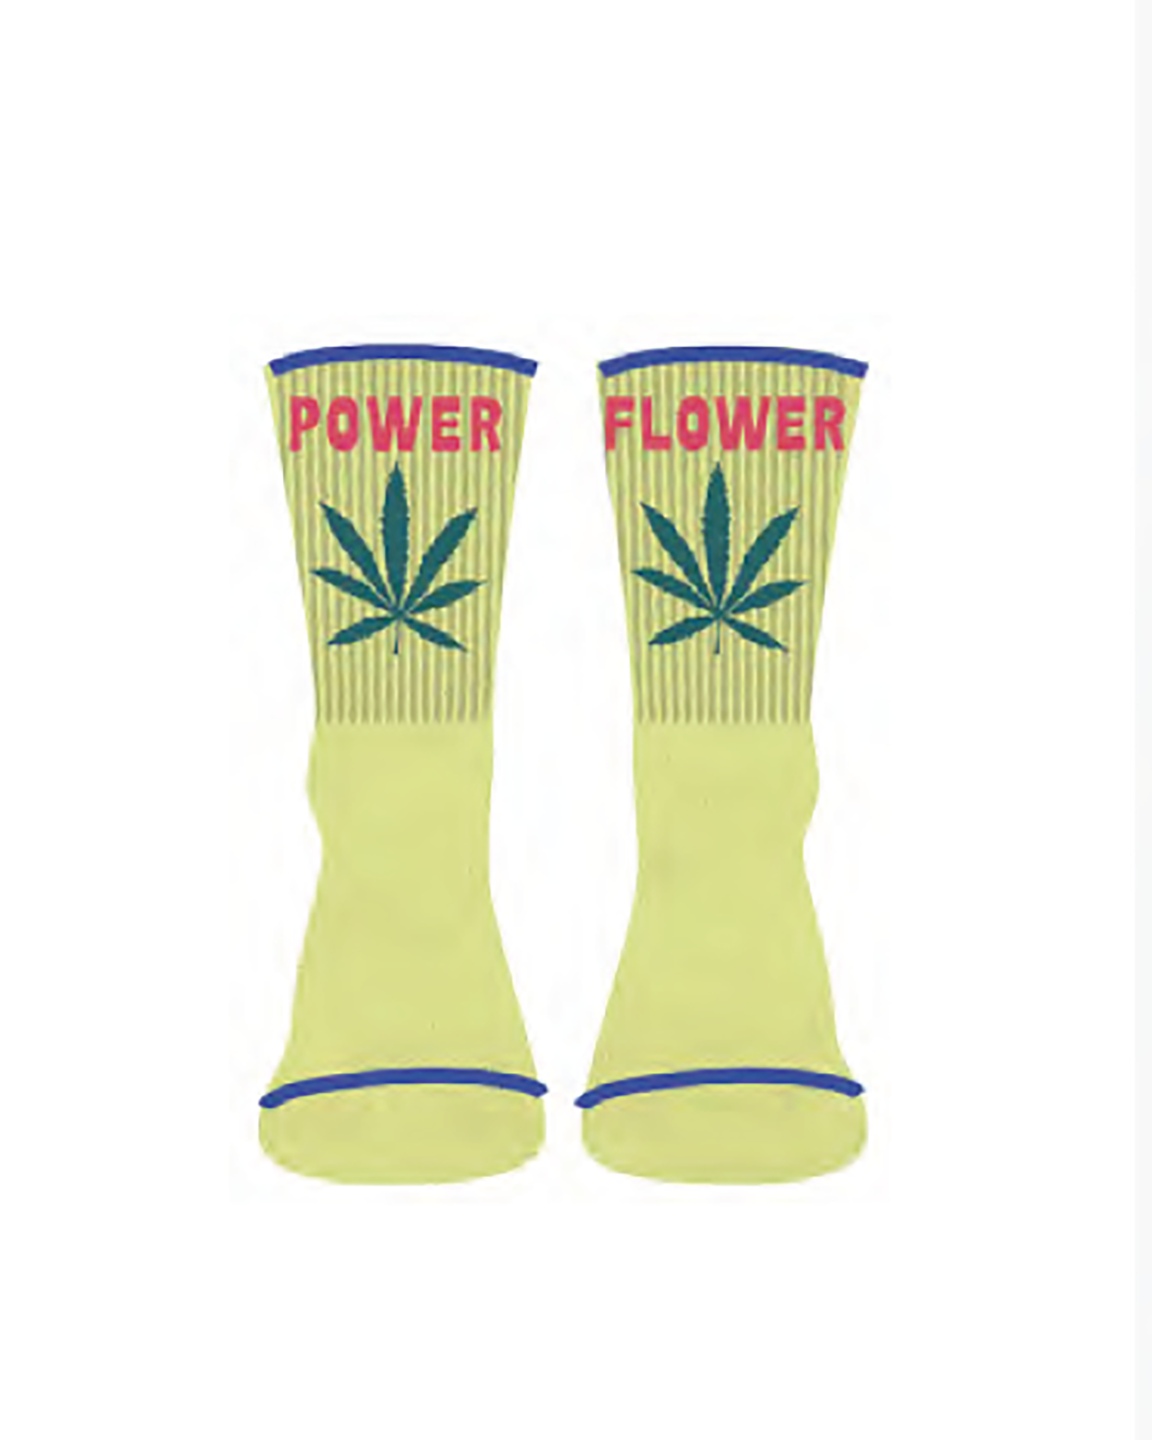 Mother Baby Steps Socks in Power Flower Bud